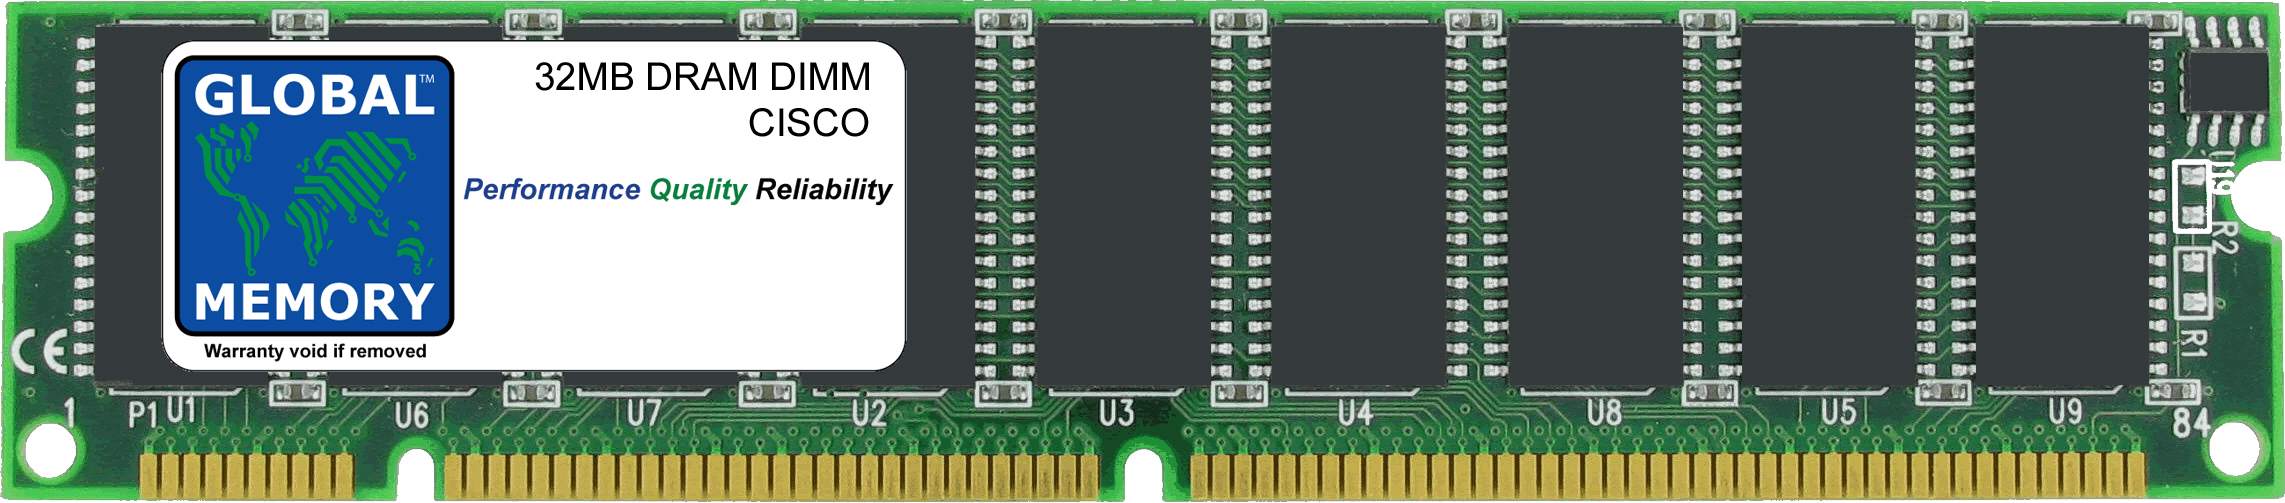 32MB DRAM DIMM MEMORY RAM FOR CISCO ICS 7750 ASI-81/160 , MRP200/300 & MRP3-8FXS/16FS (MEM-MRP-32D)